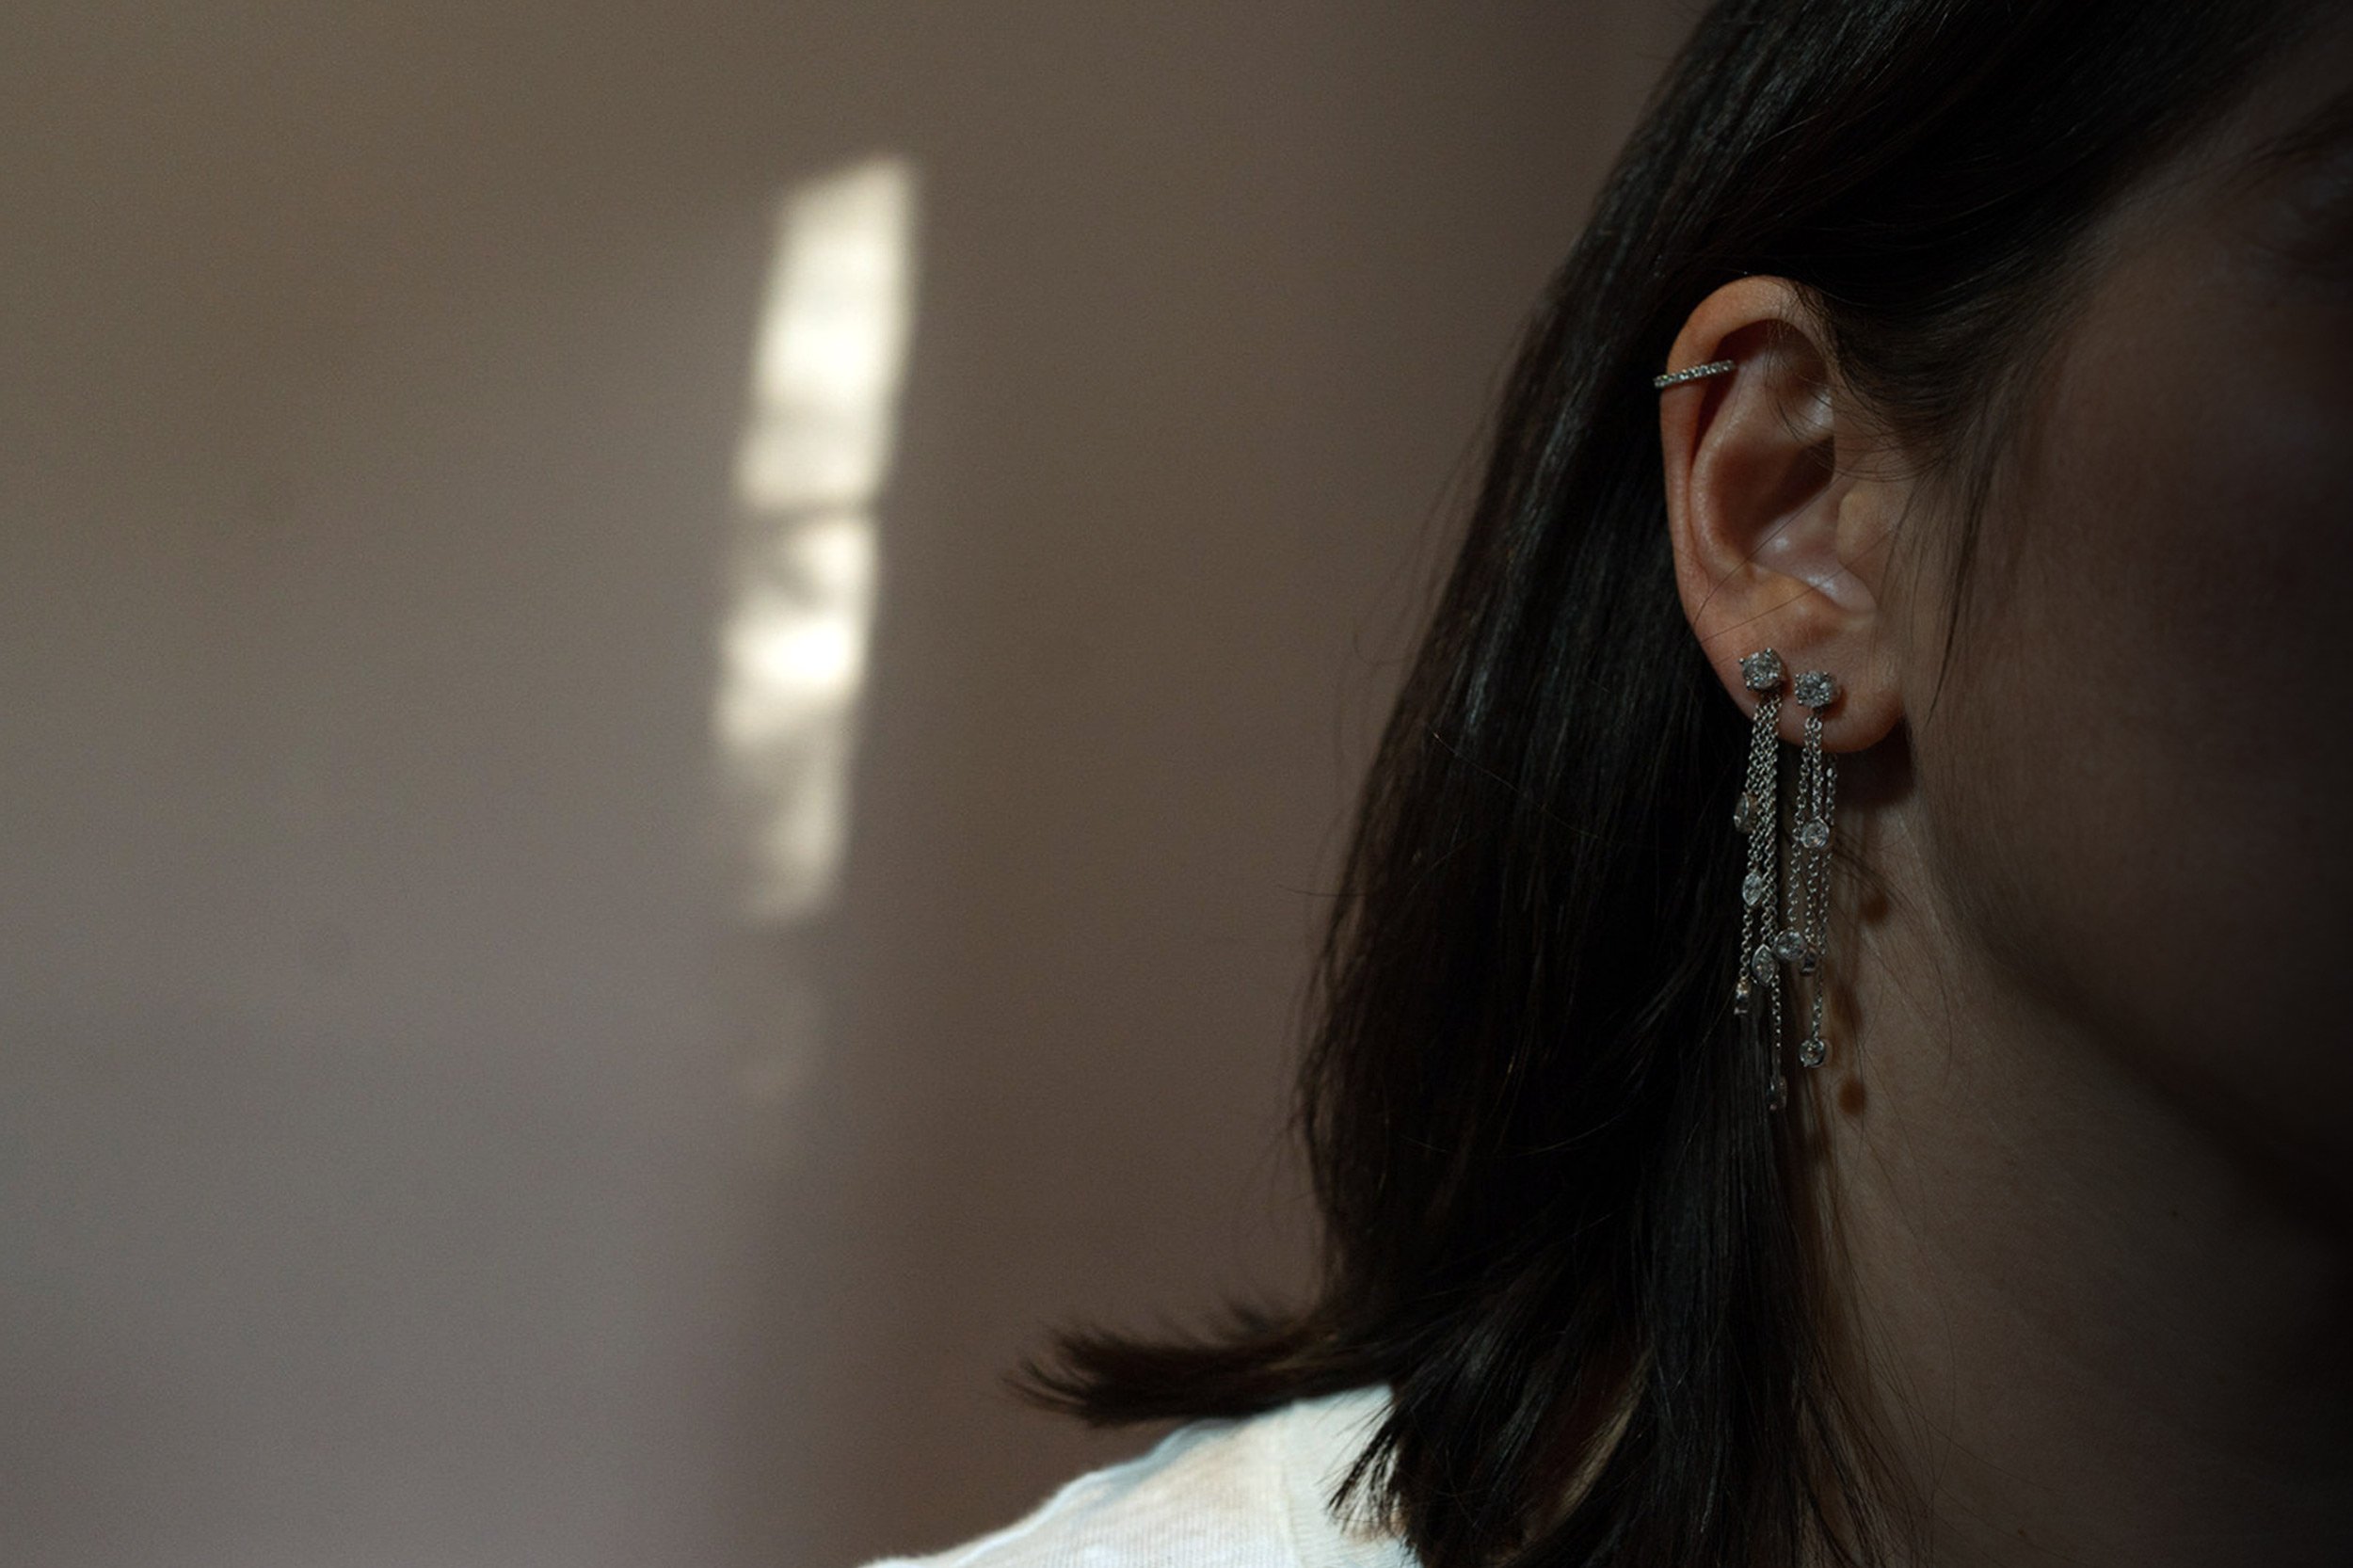 white-female-wearing-diamond-earrings-and-earcuff.jpg